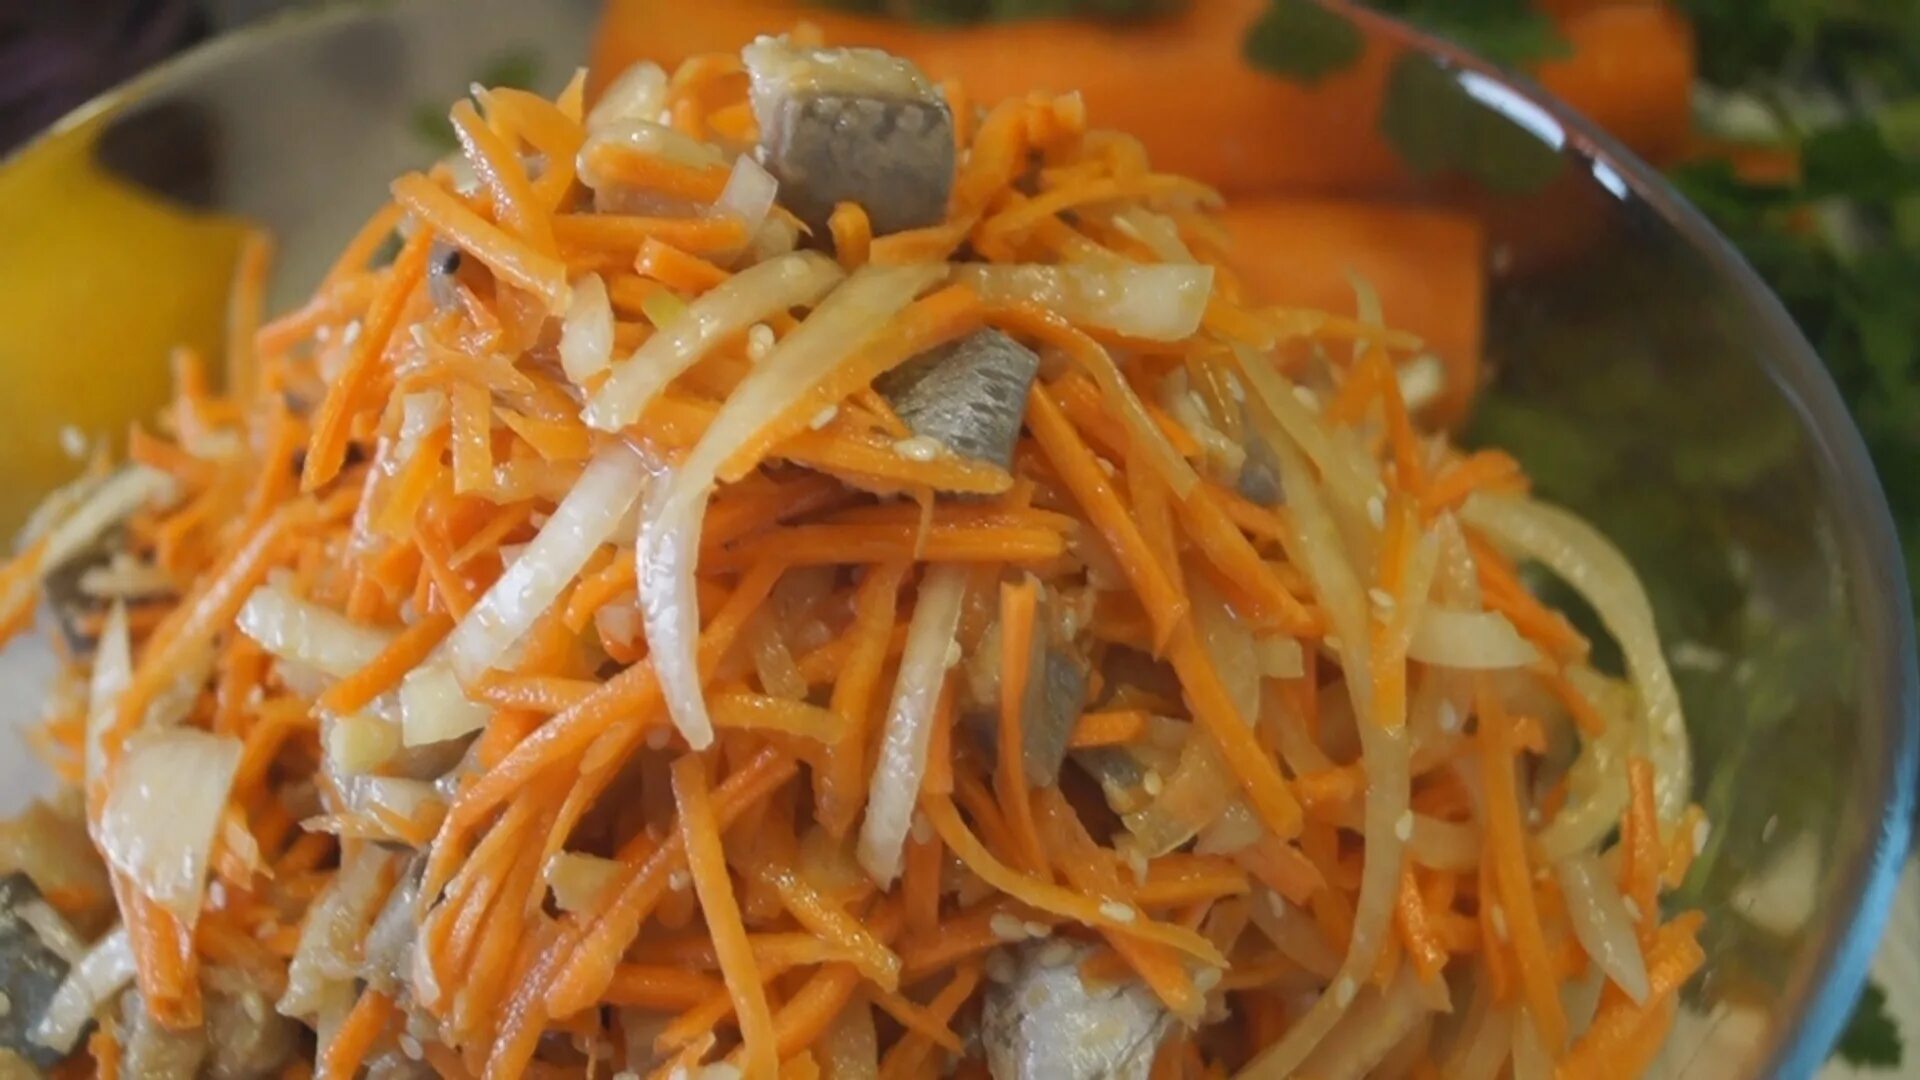 Щука по корейски с морковью. Корейская закуска (сельдь с морковью по корейски) 400г. Салат с рыбой и морковью с луком. Хе из рыбы с морковью. Салат из моркови и селедки.